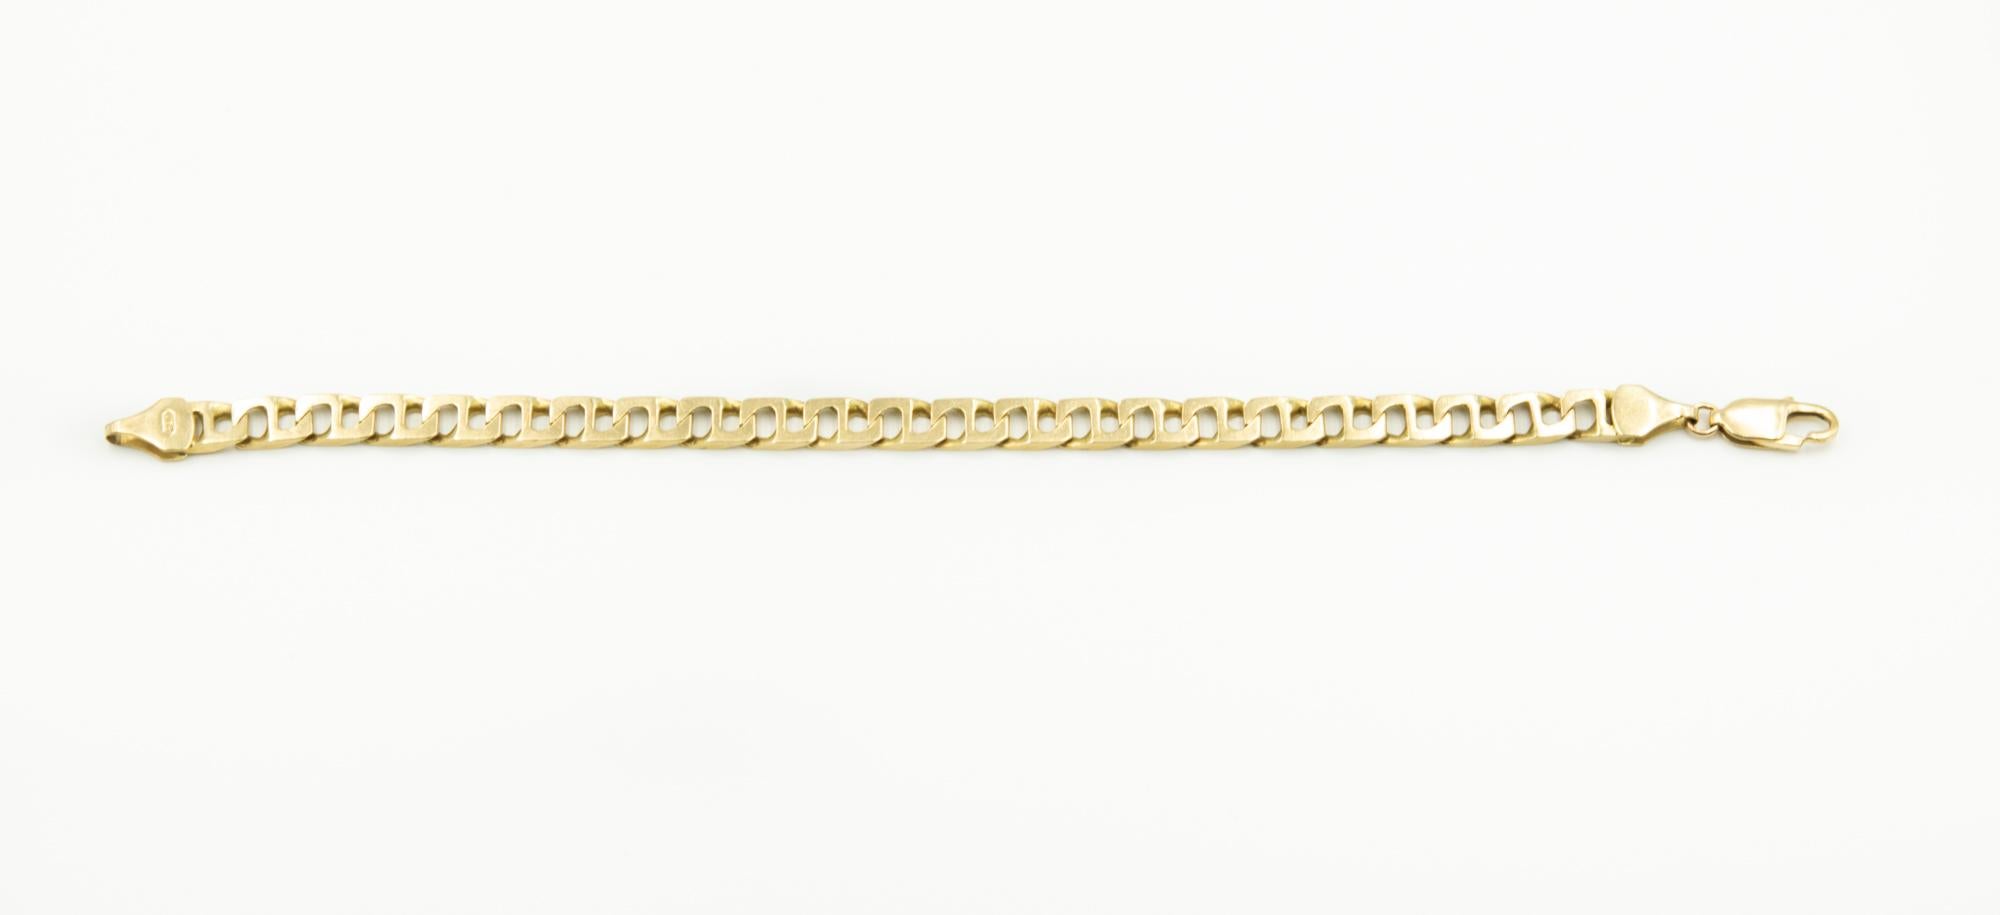 Élégant  bracelet pour homme en or jaune 14k à maillons rectangulaires (ressemblant à un 8) avec fermoir mousqueton.  Le bracelet mesure 8,5